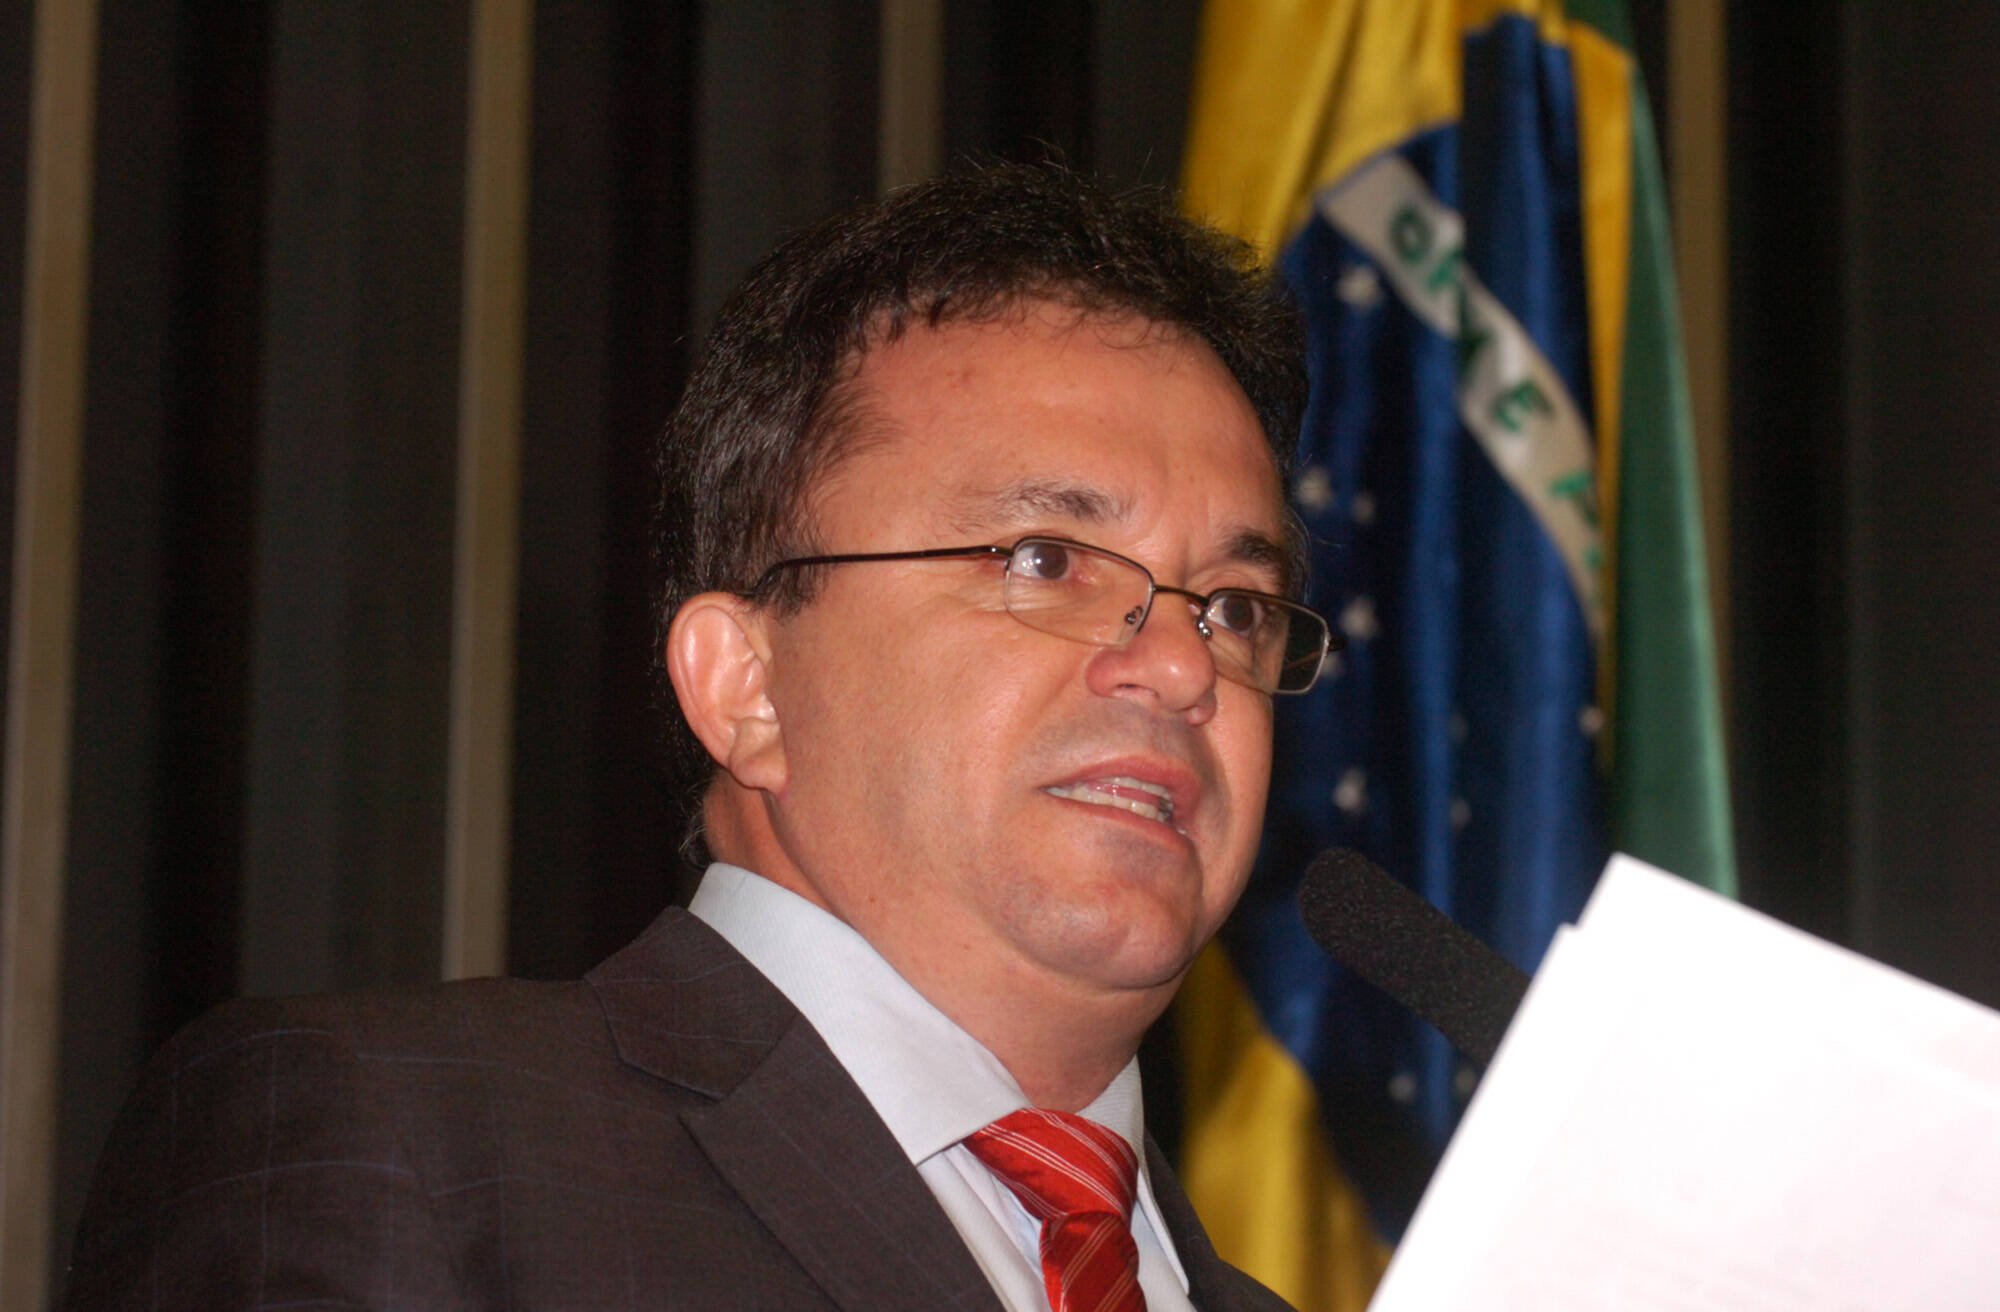 Denúncia da PGR contra o deputado petista foi aceita por unanimidade pelos ministros da segunda turma do STF. Foto: Gilberto Nascimento/Agência Câmara - 24.11.2010